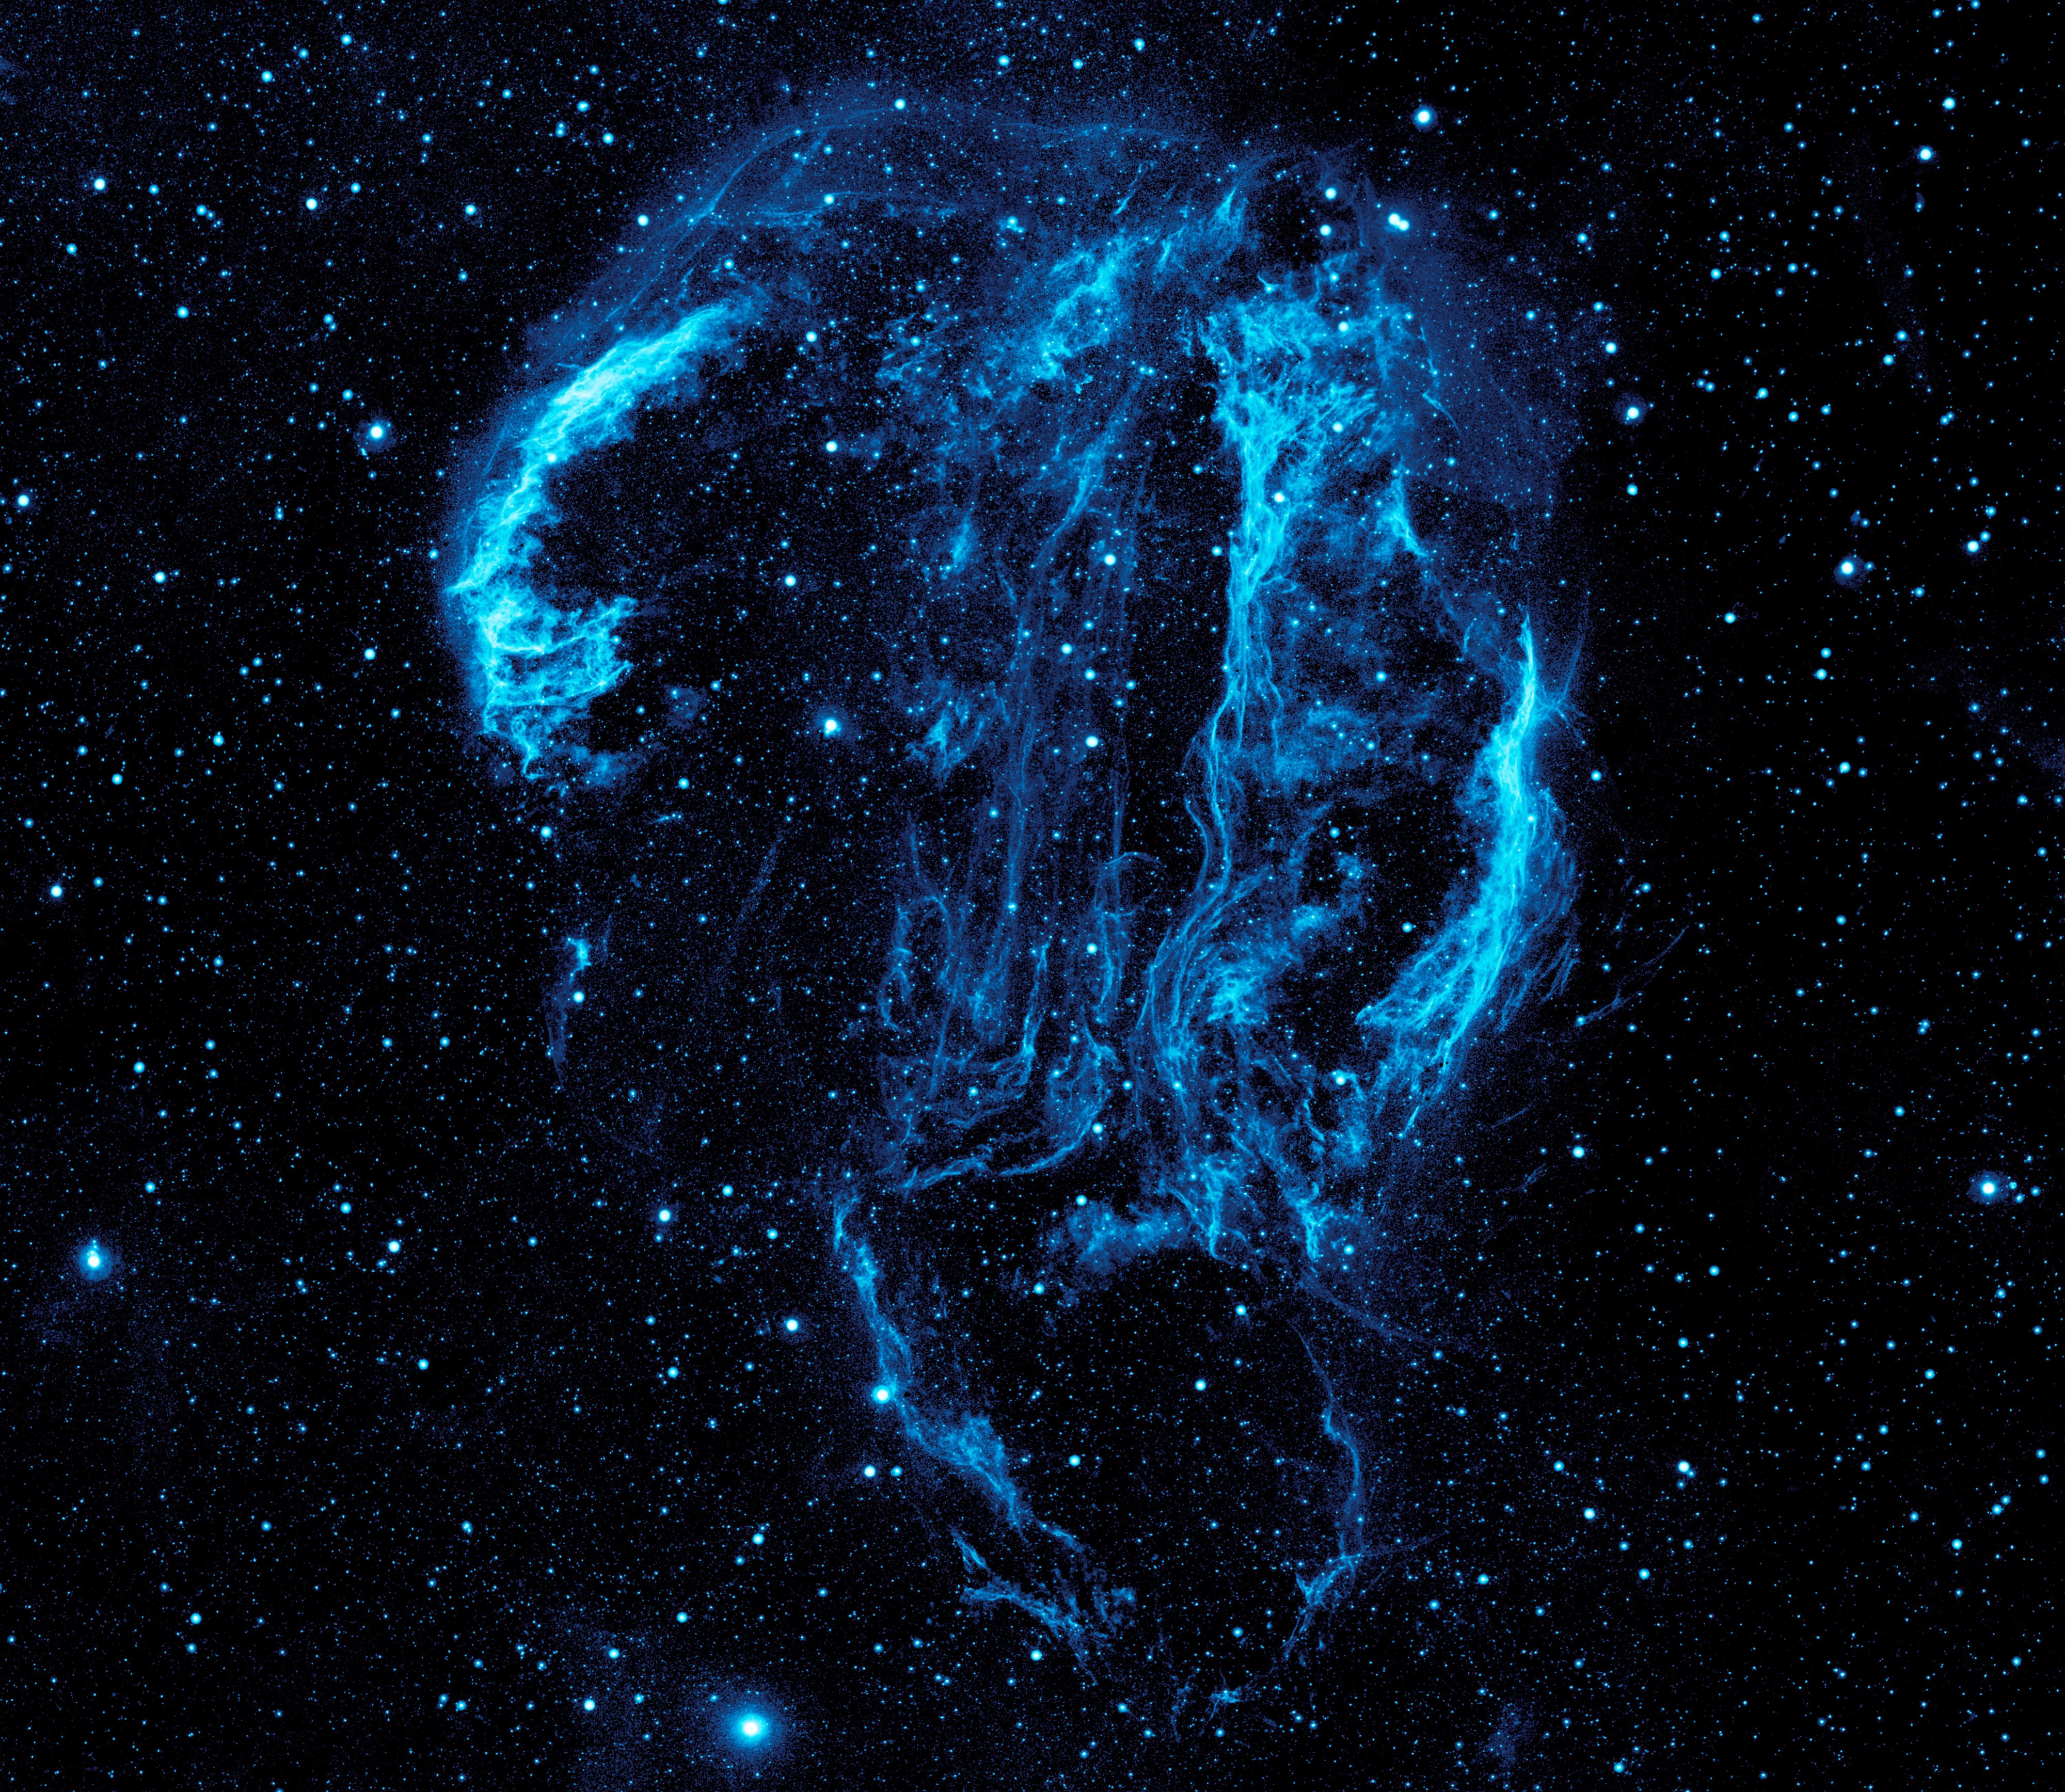 Ultraviolet image of the Cygnus Loop Nebula crop